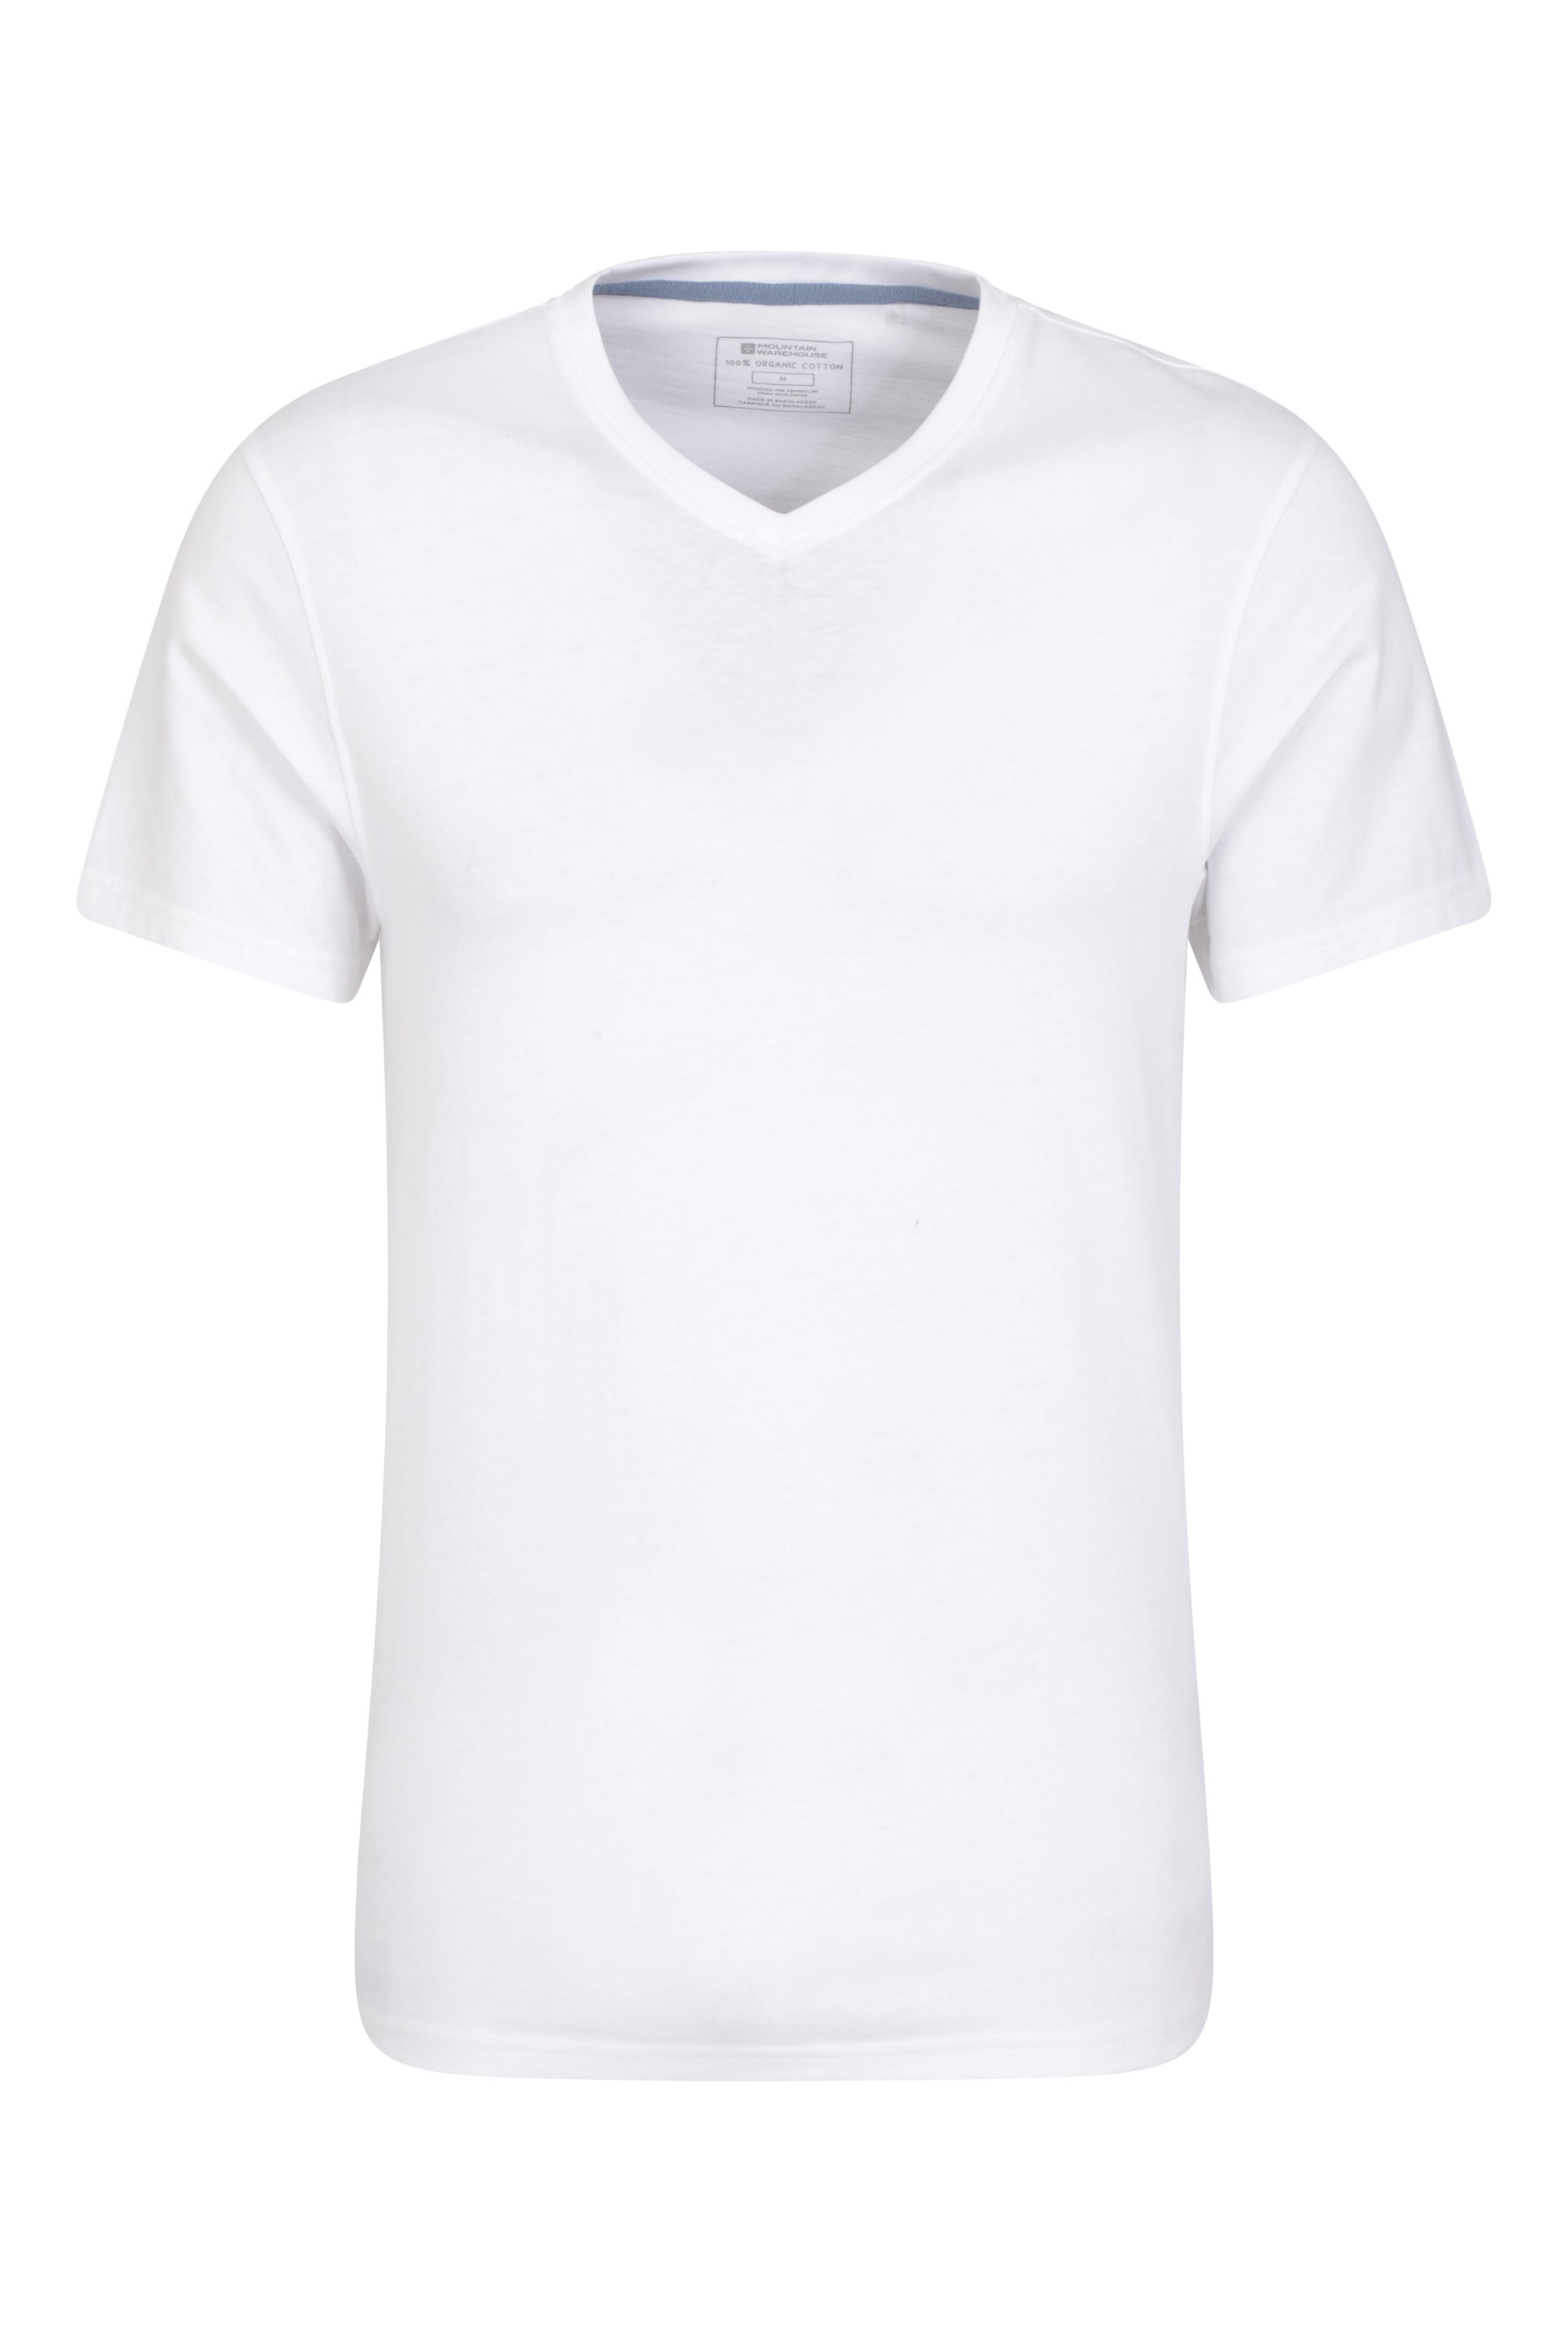 Eden koszulka męska organiczna z dekoltem w szpic - White